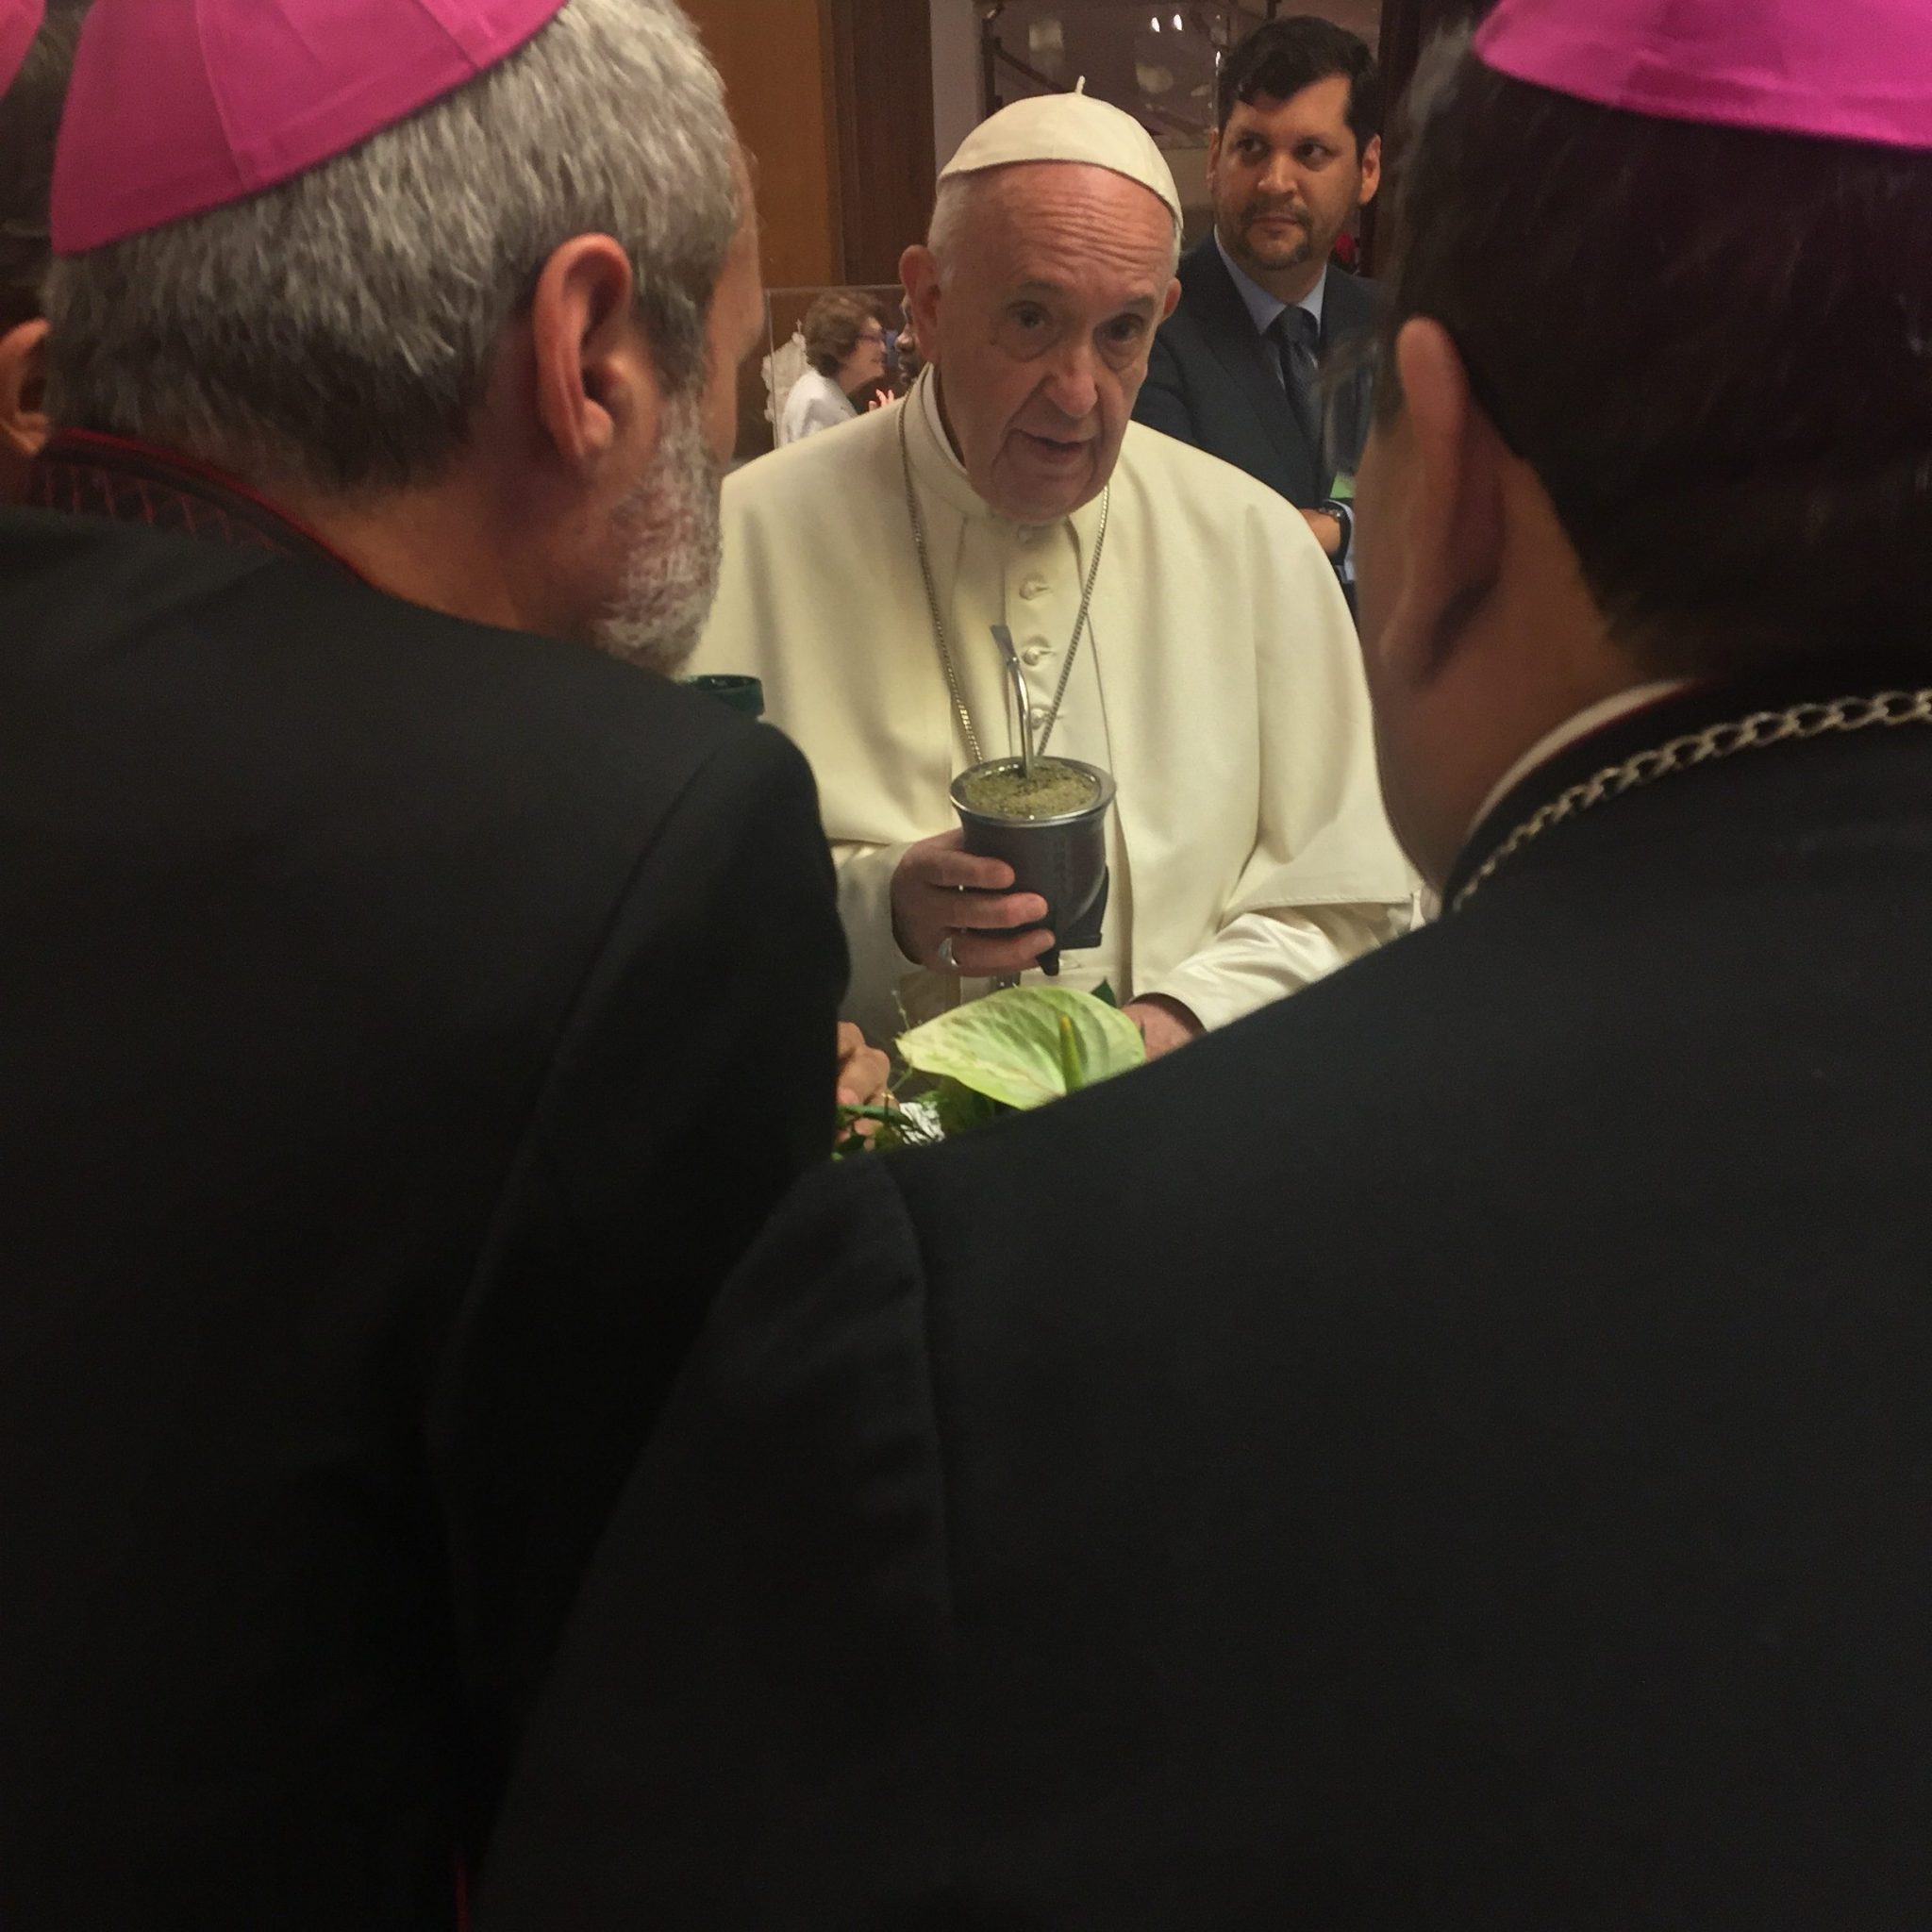 Papst Franziskus bei einer Mate-Tee-Pause